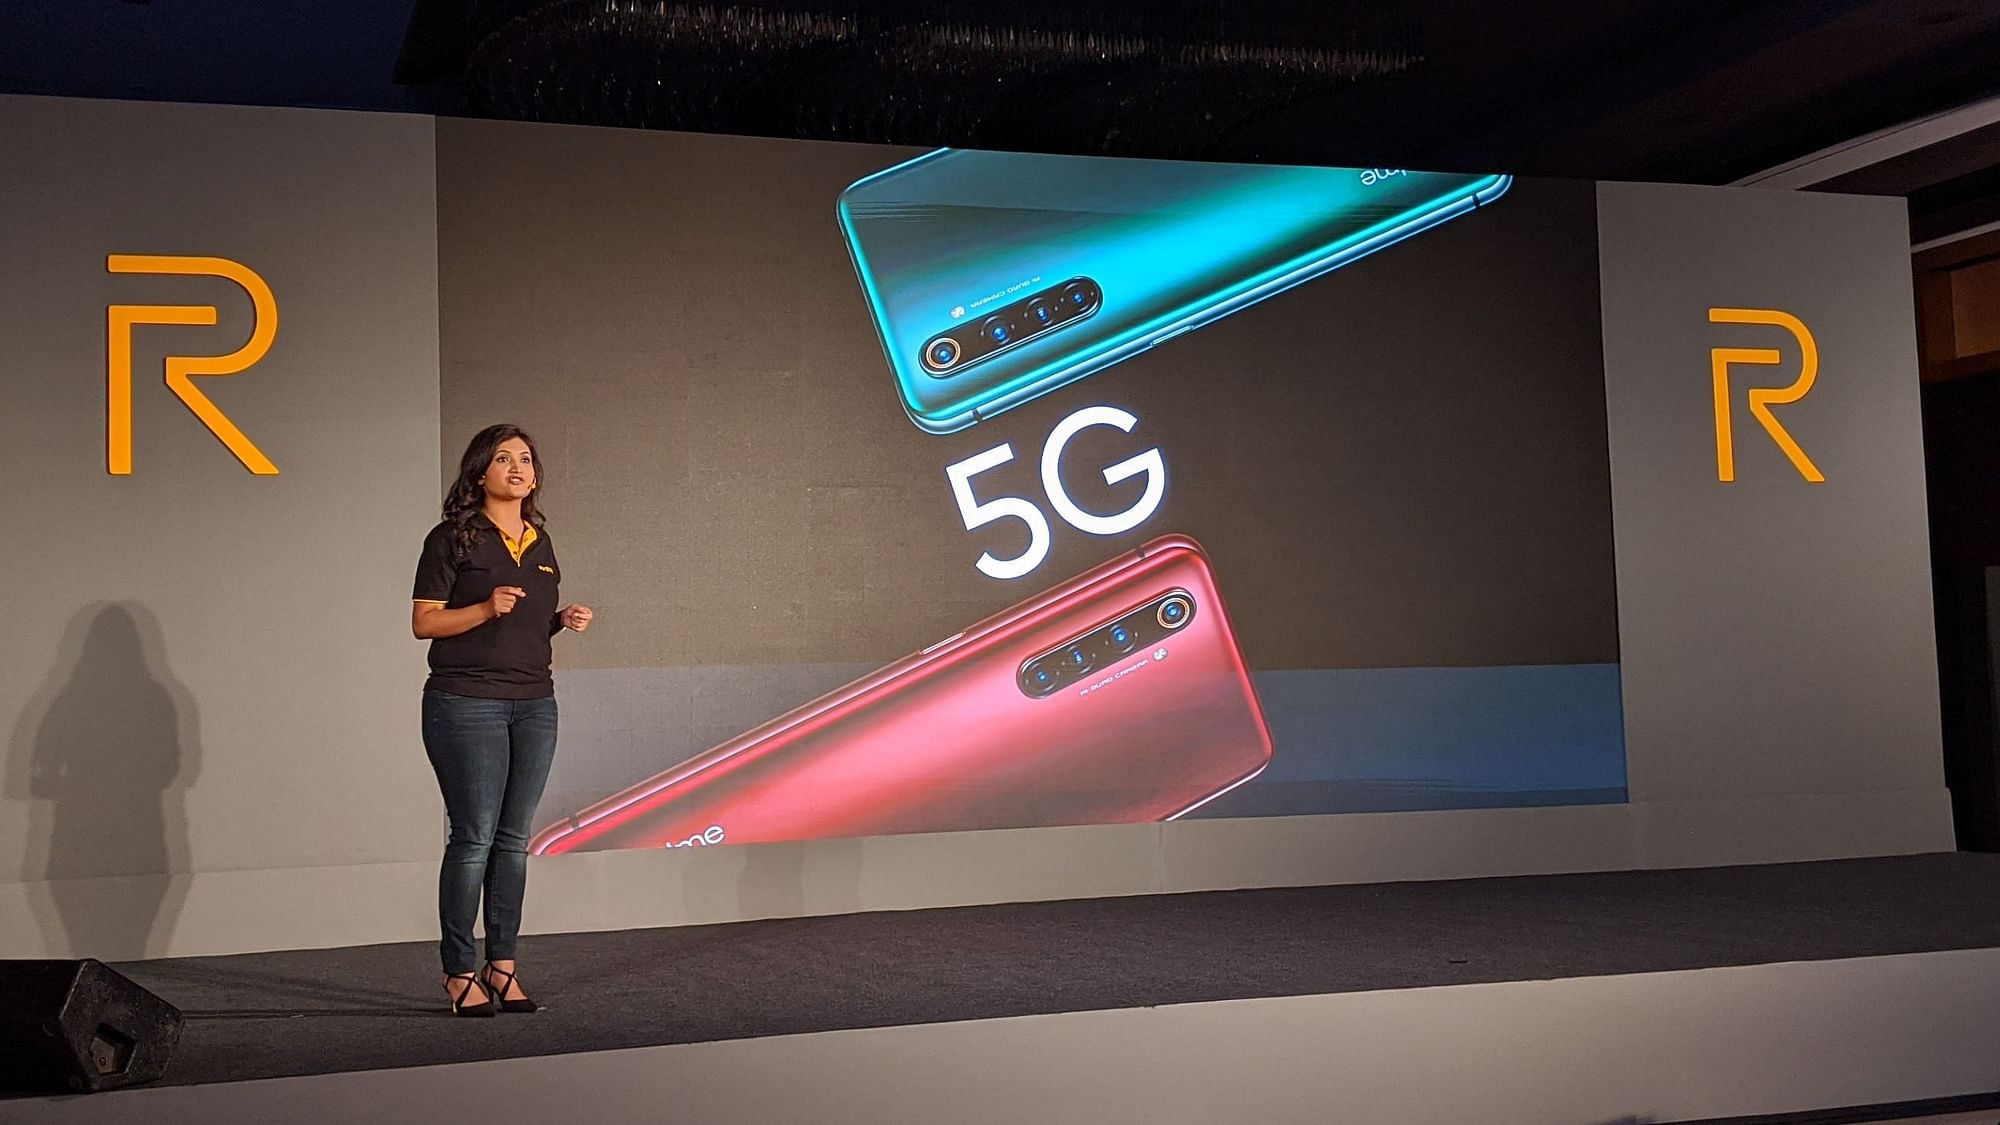 5G नेटवर्क भारत में अभी नहीं पहुंचा है तो फोन लॉन्च करने का क्या कारण है